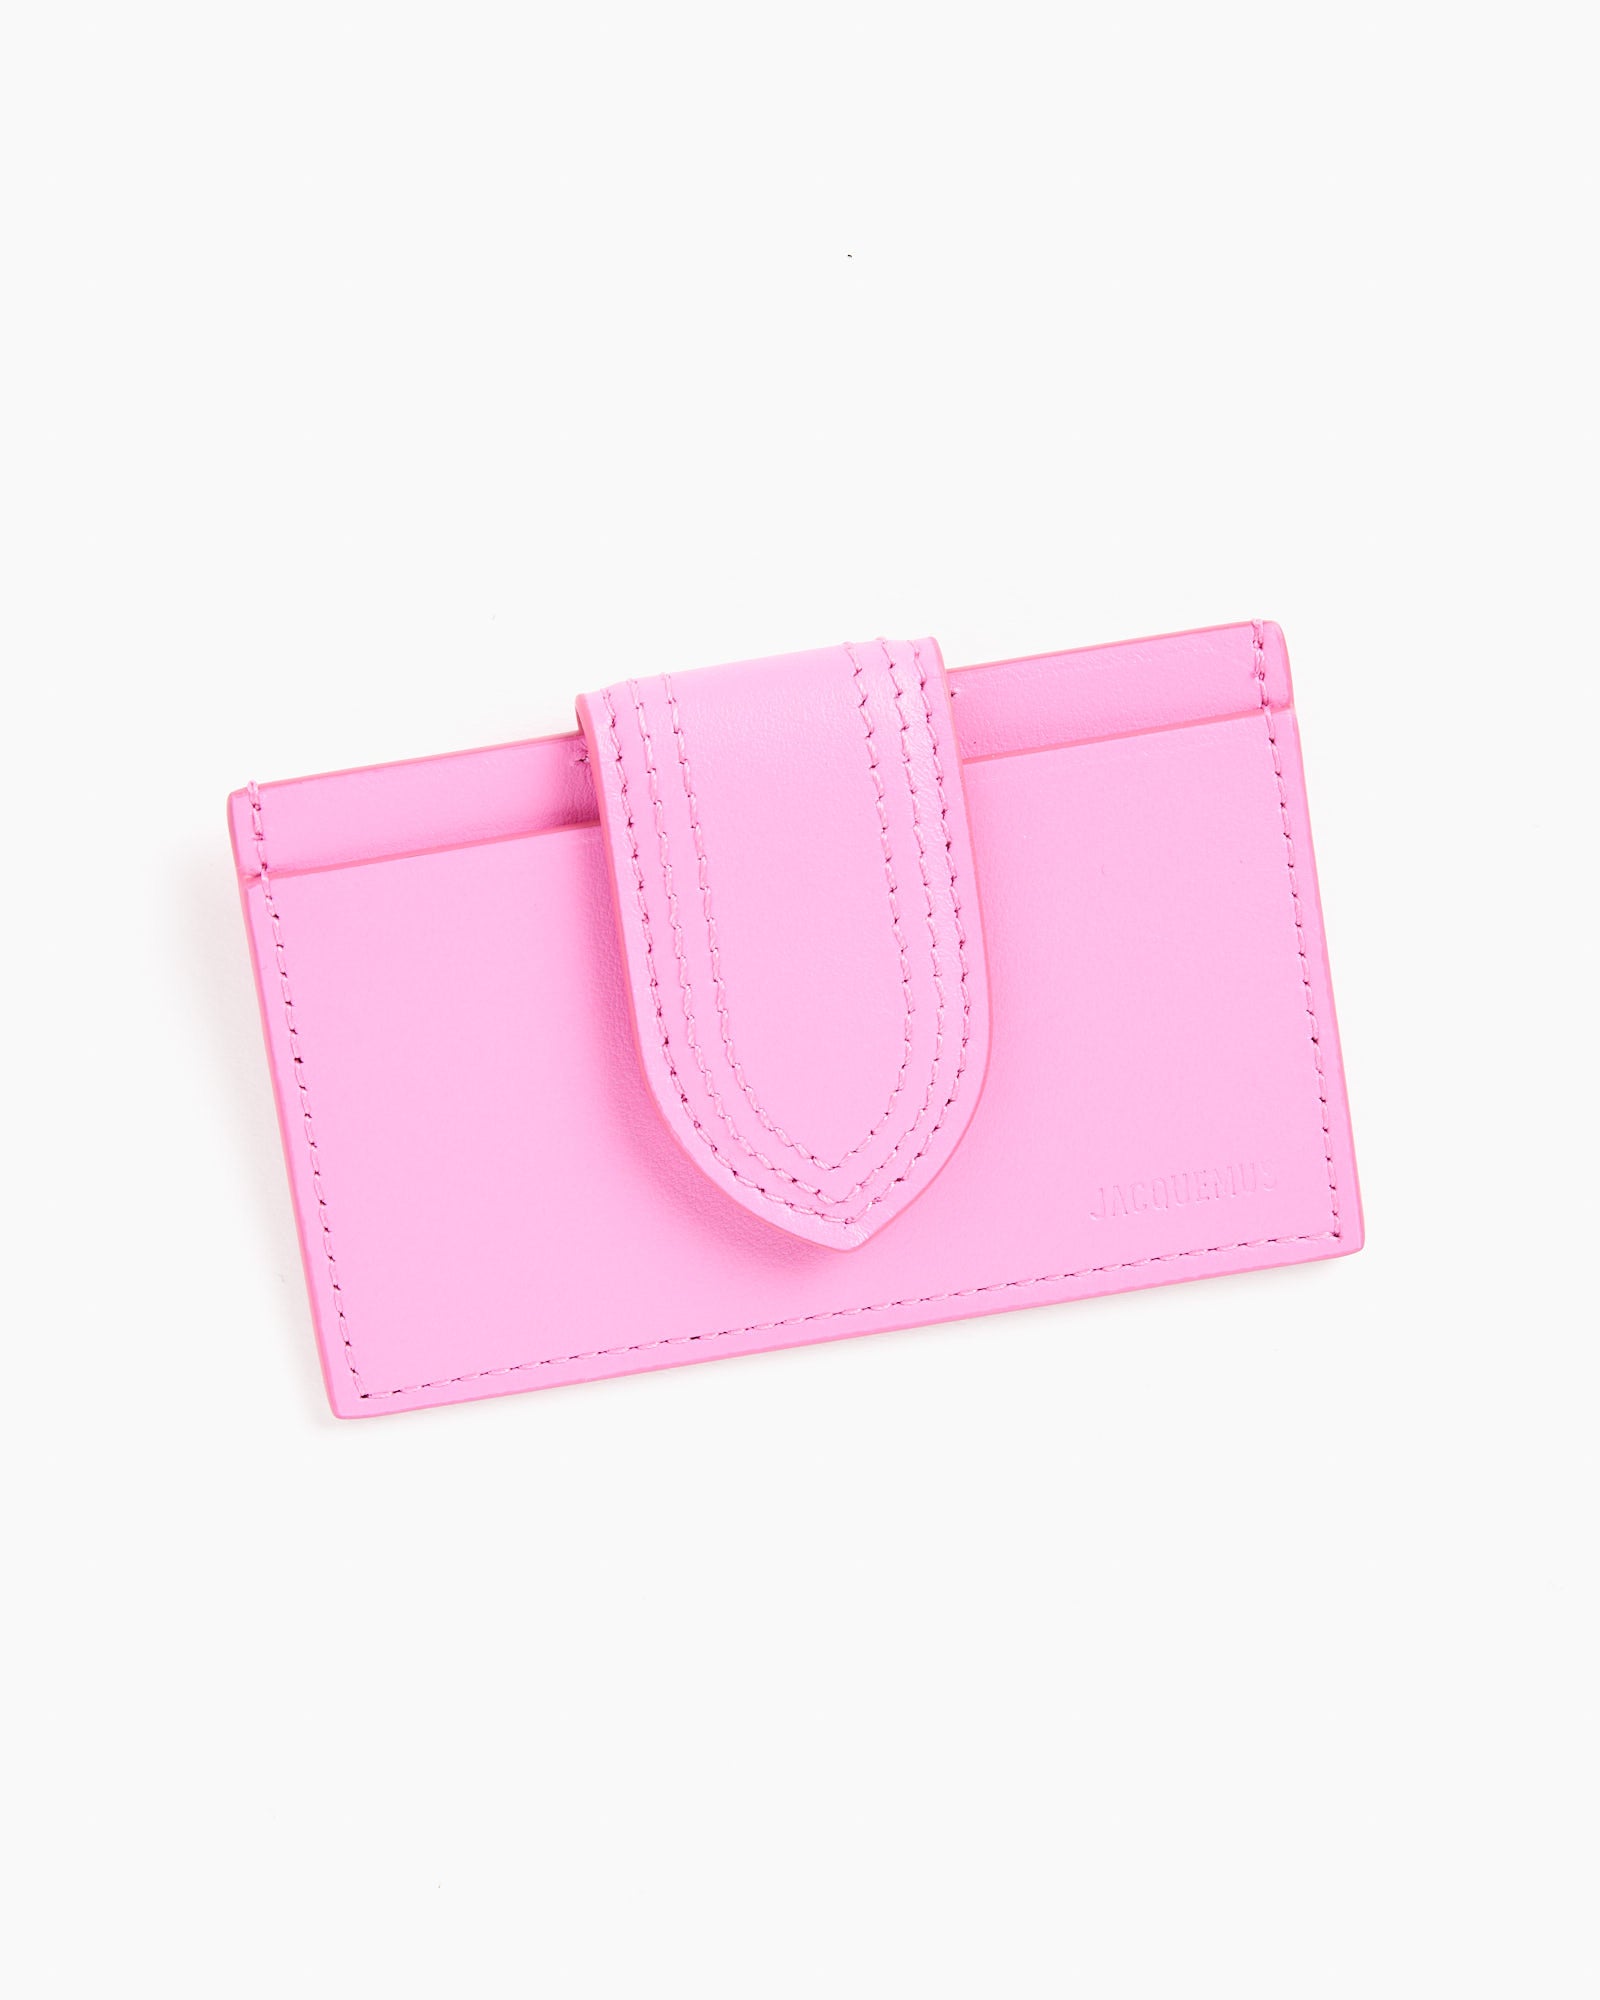 Le Porte-Carte Bambino Bag in Neon Pink